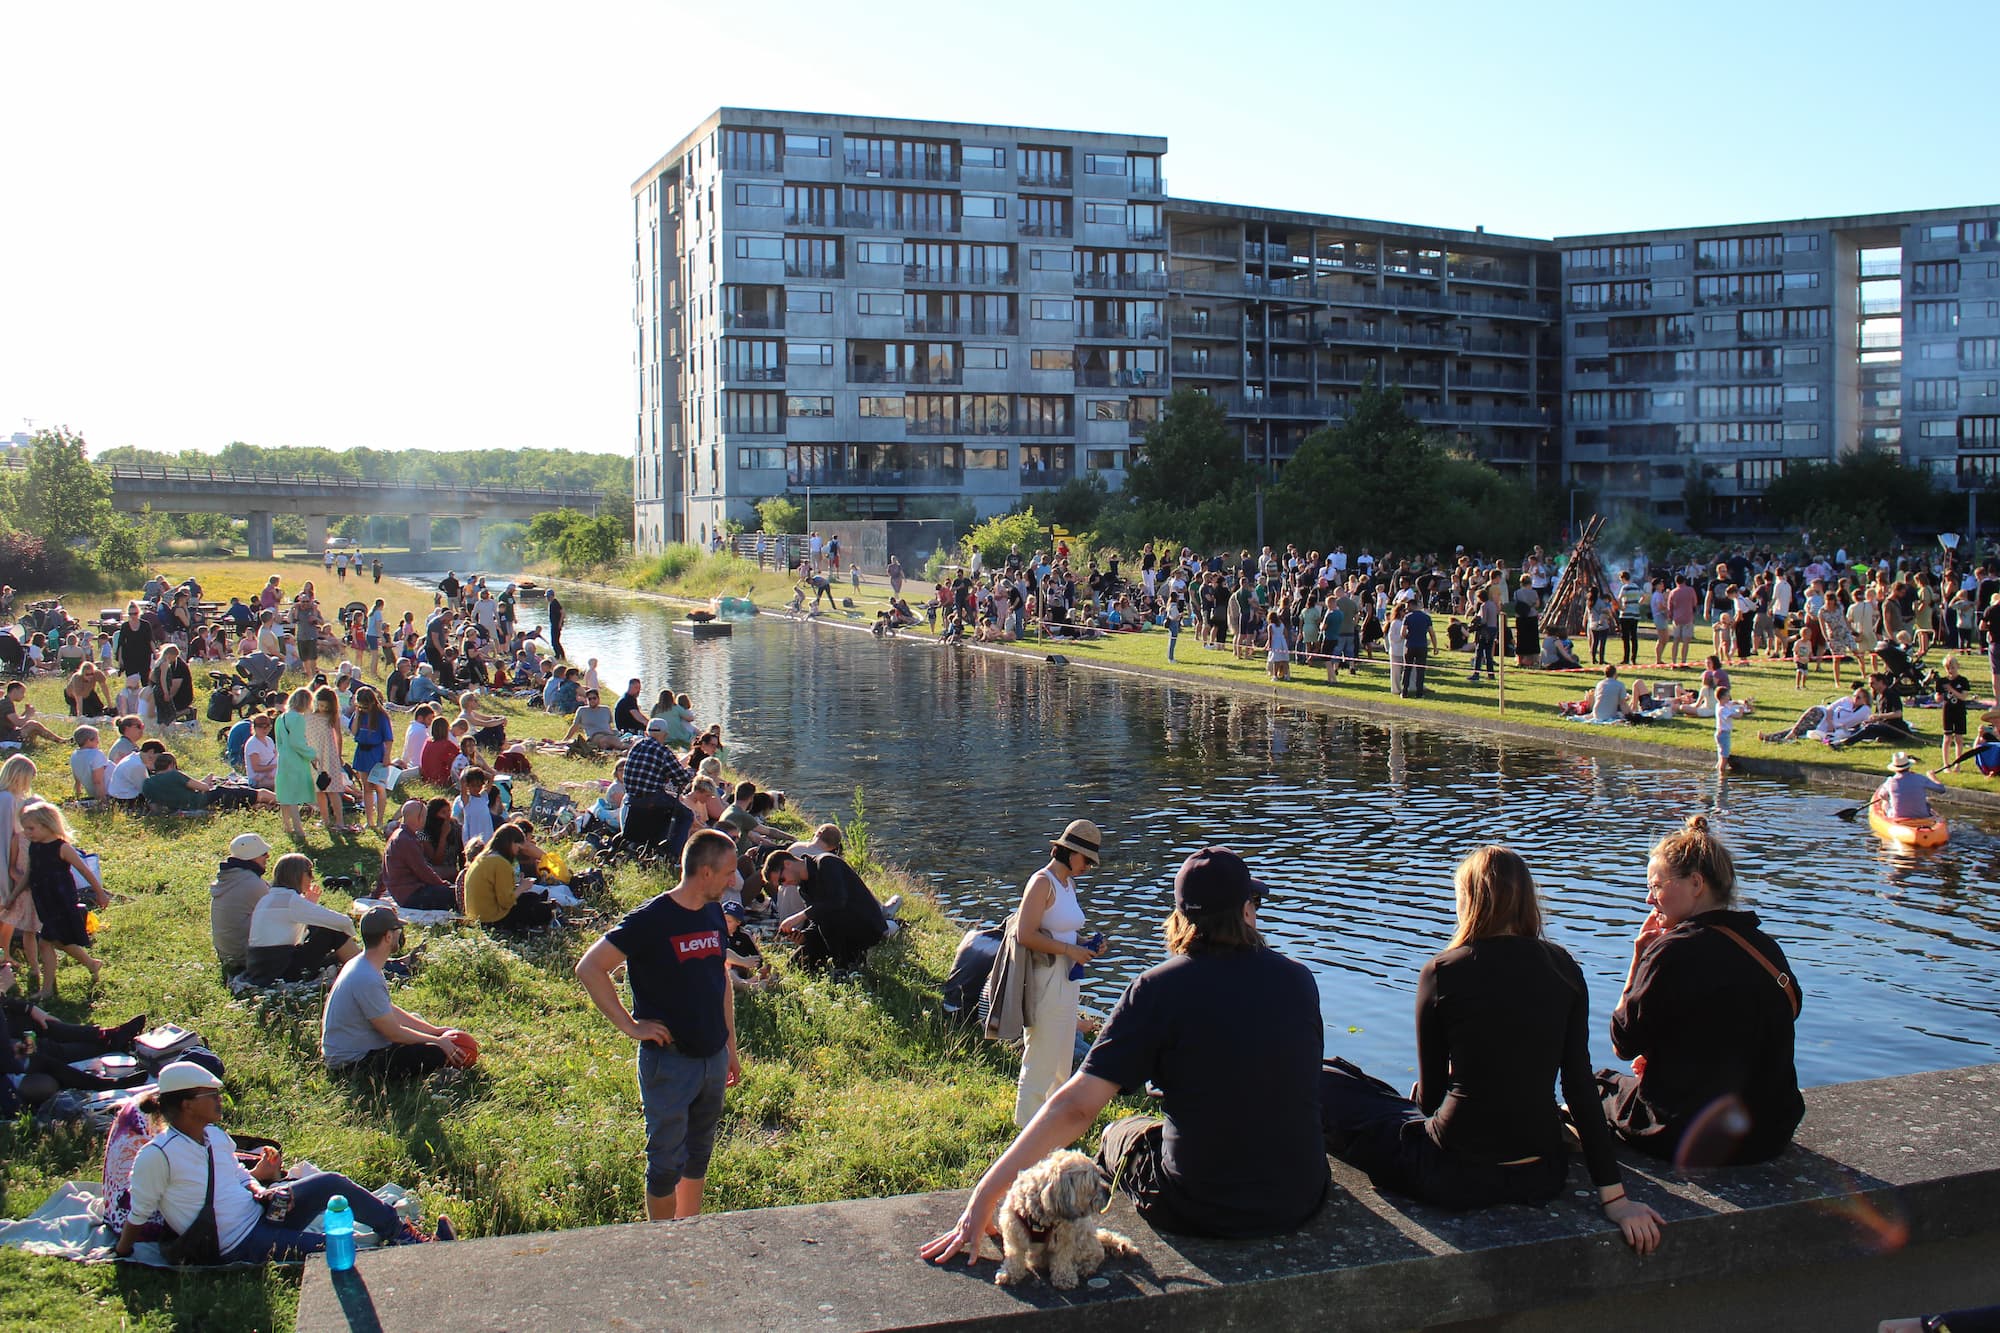 Sankthans på Grønningen var en succes med langt over 1000 deltagere. Arrangementet er vokset fra nabomøde til forankret bydelstradition.